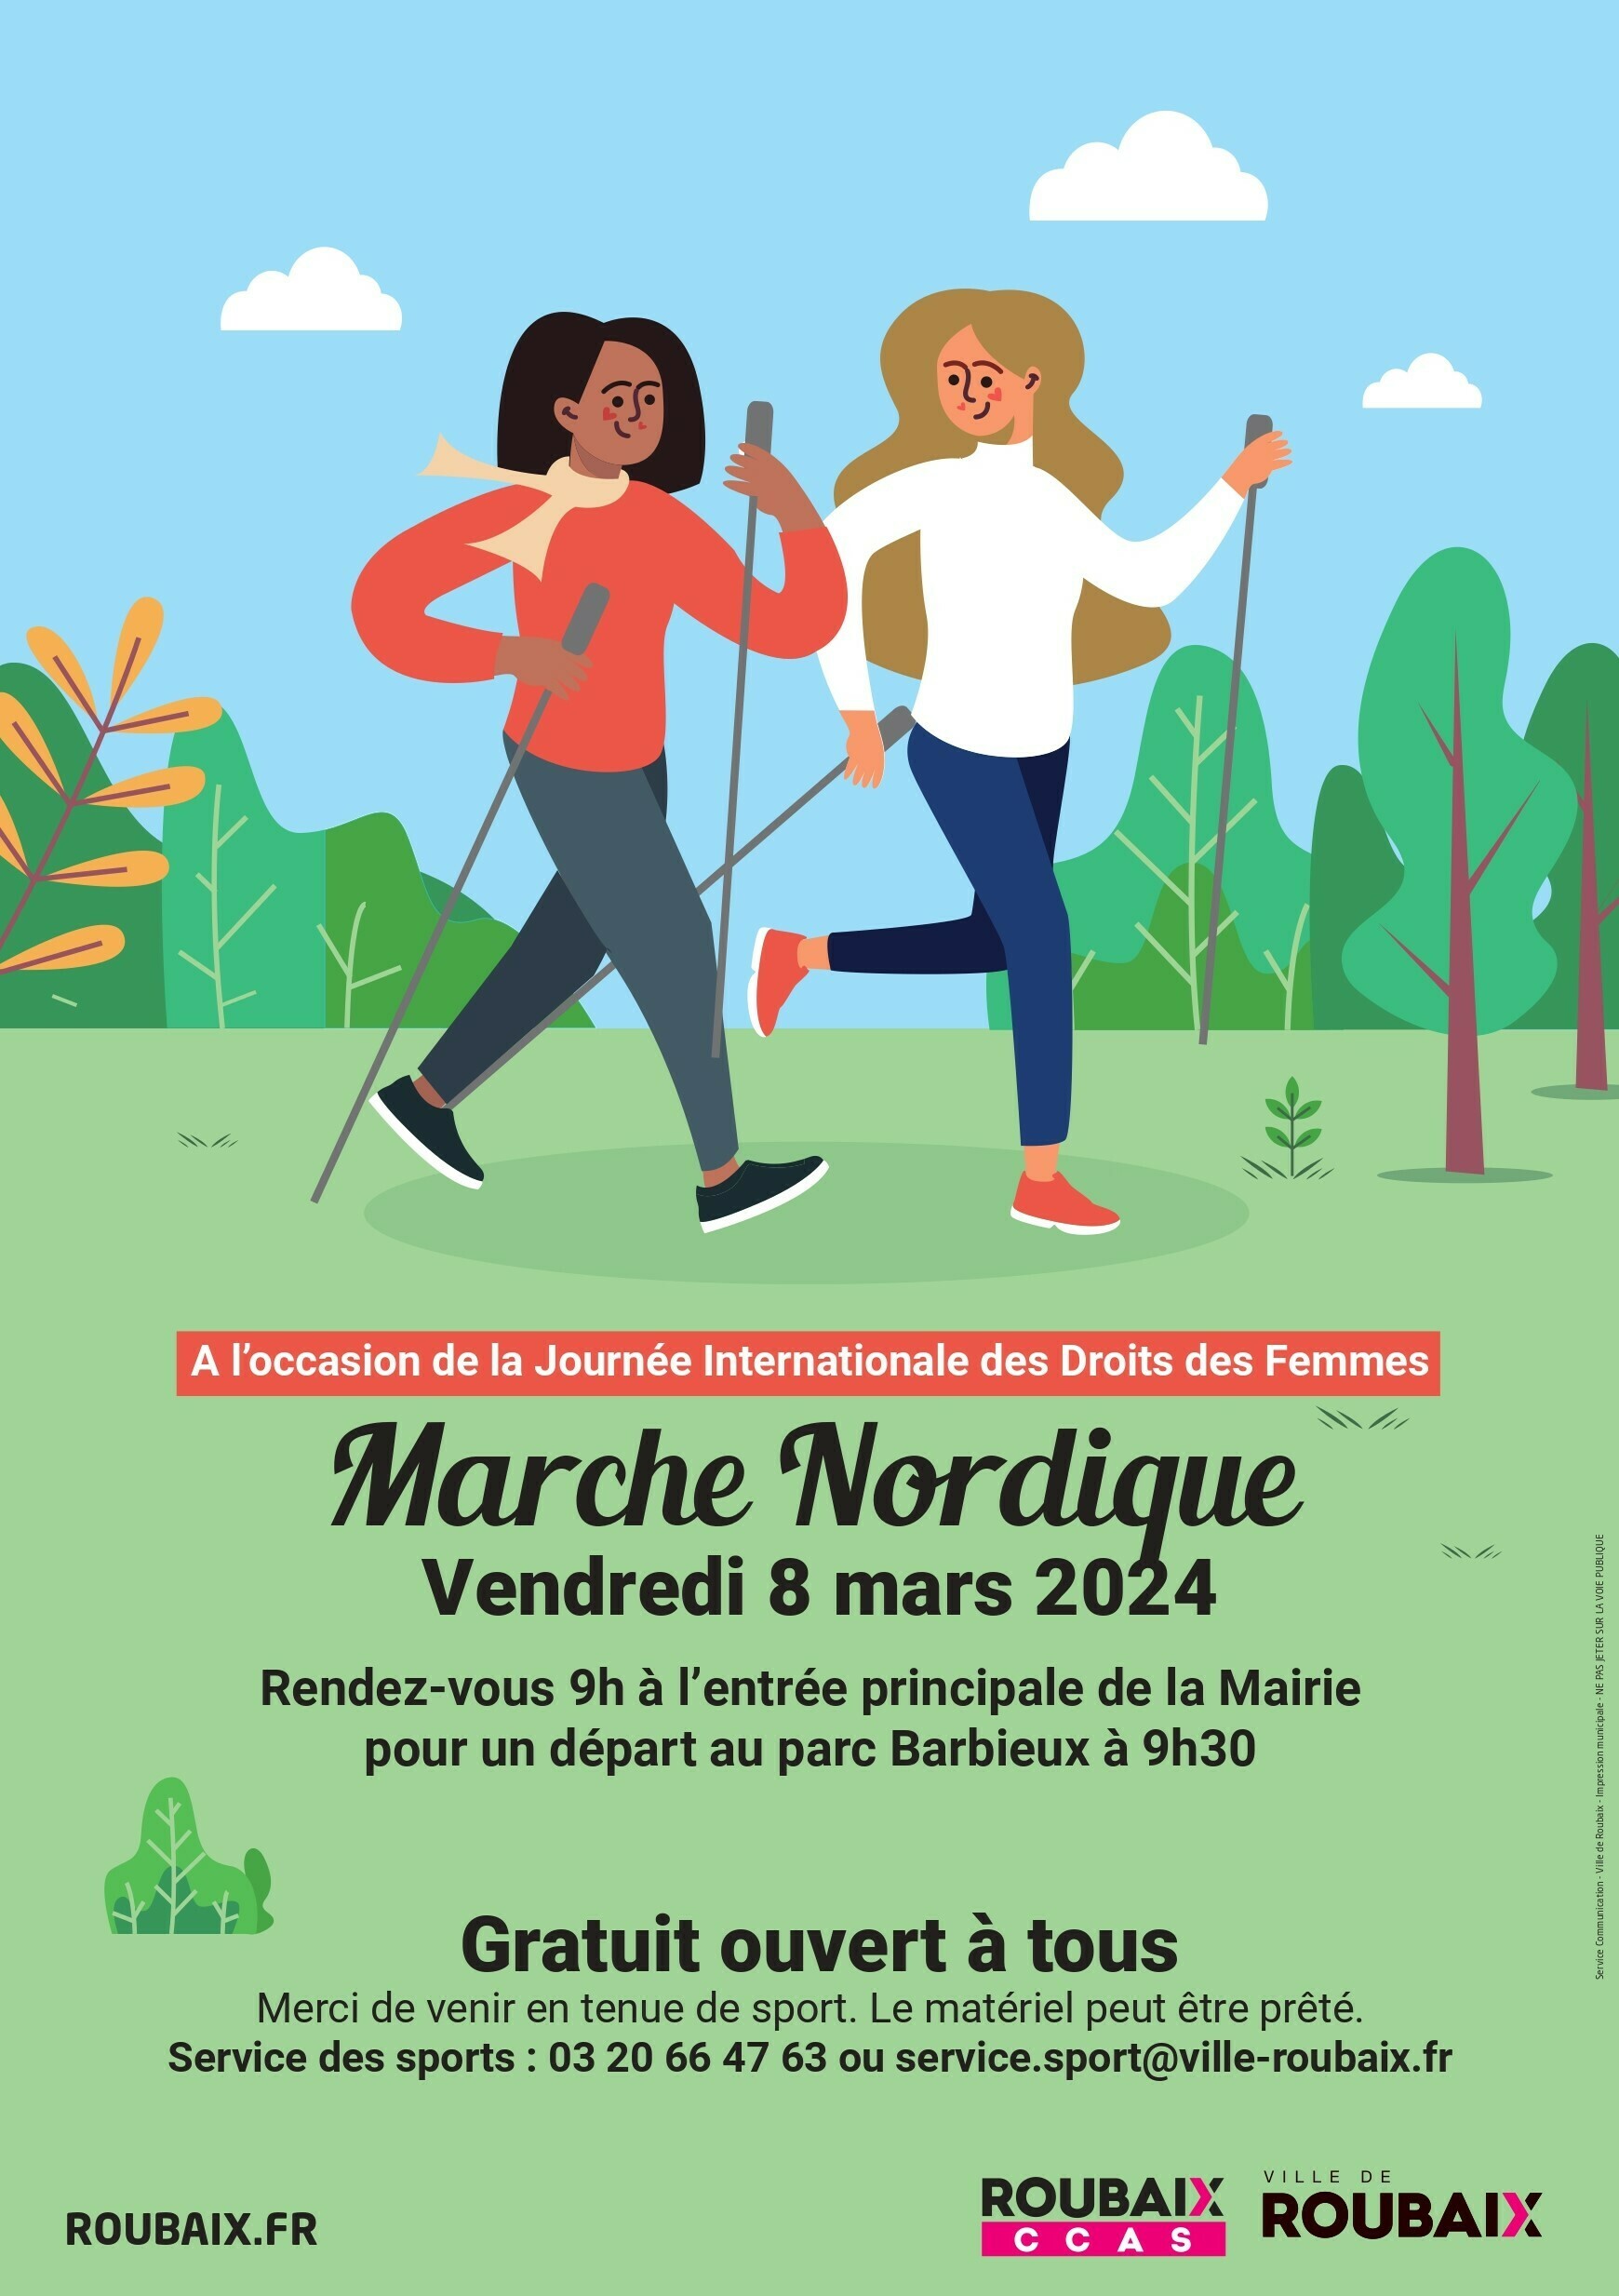 Affiche de la marche nordique organisée par la ville de Roubaix le 8 mars 2024